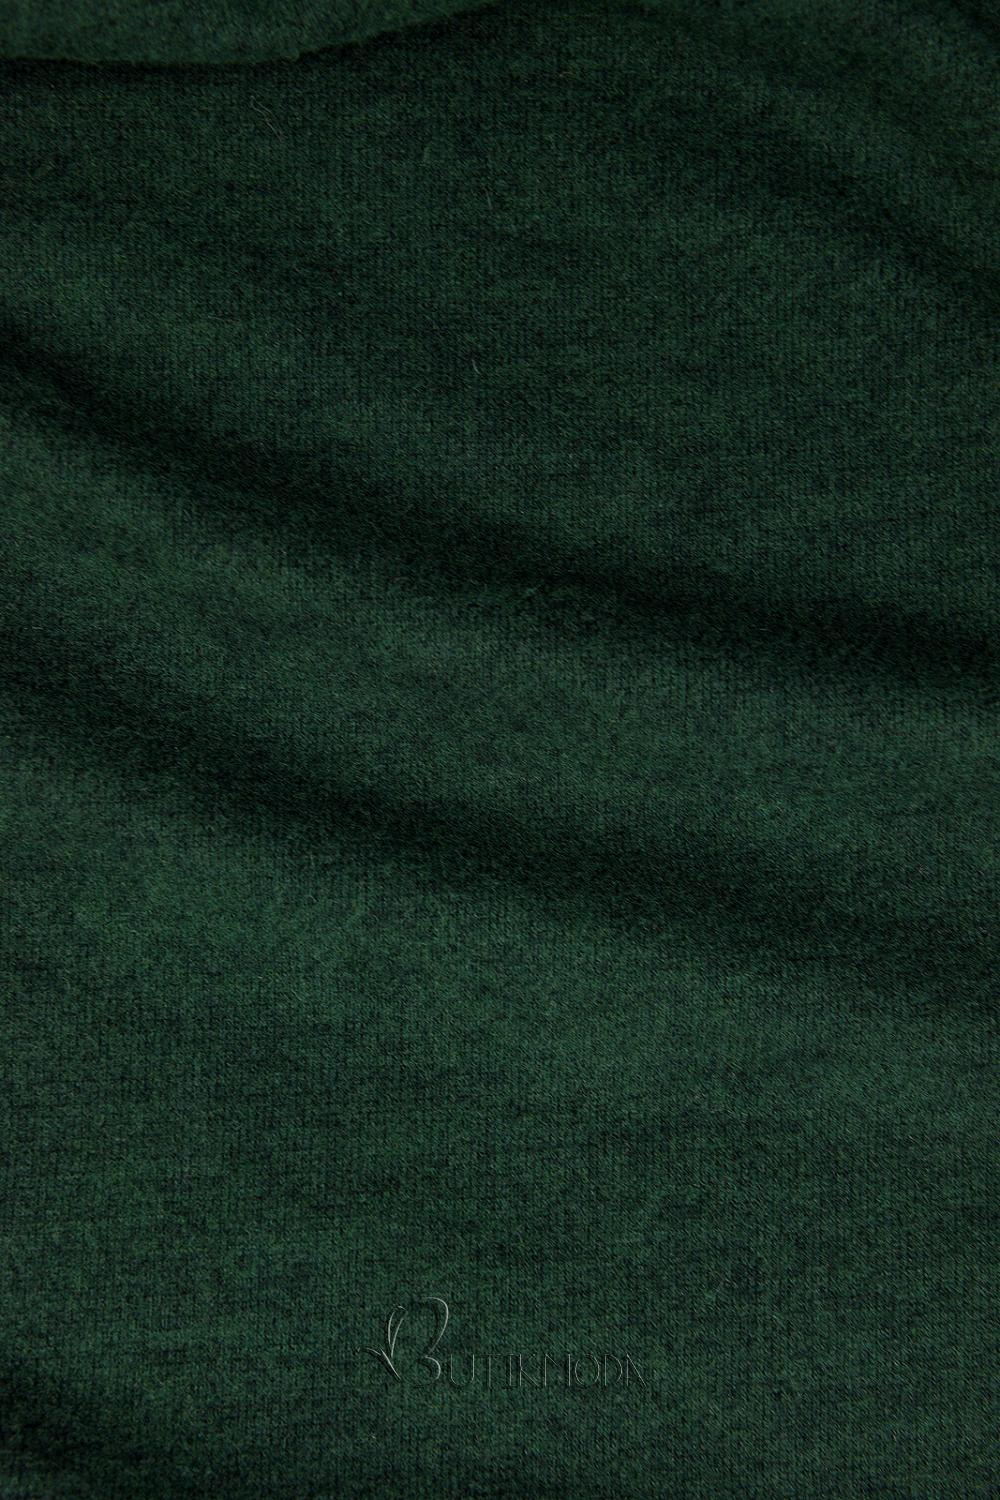 Zöld színű elegáns ruha, testhezálló fazonban